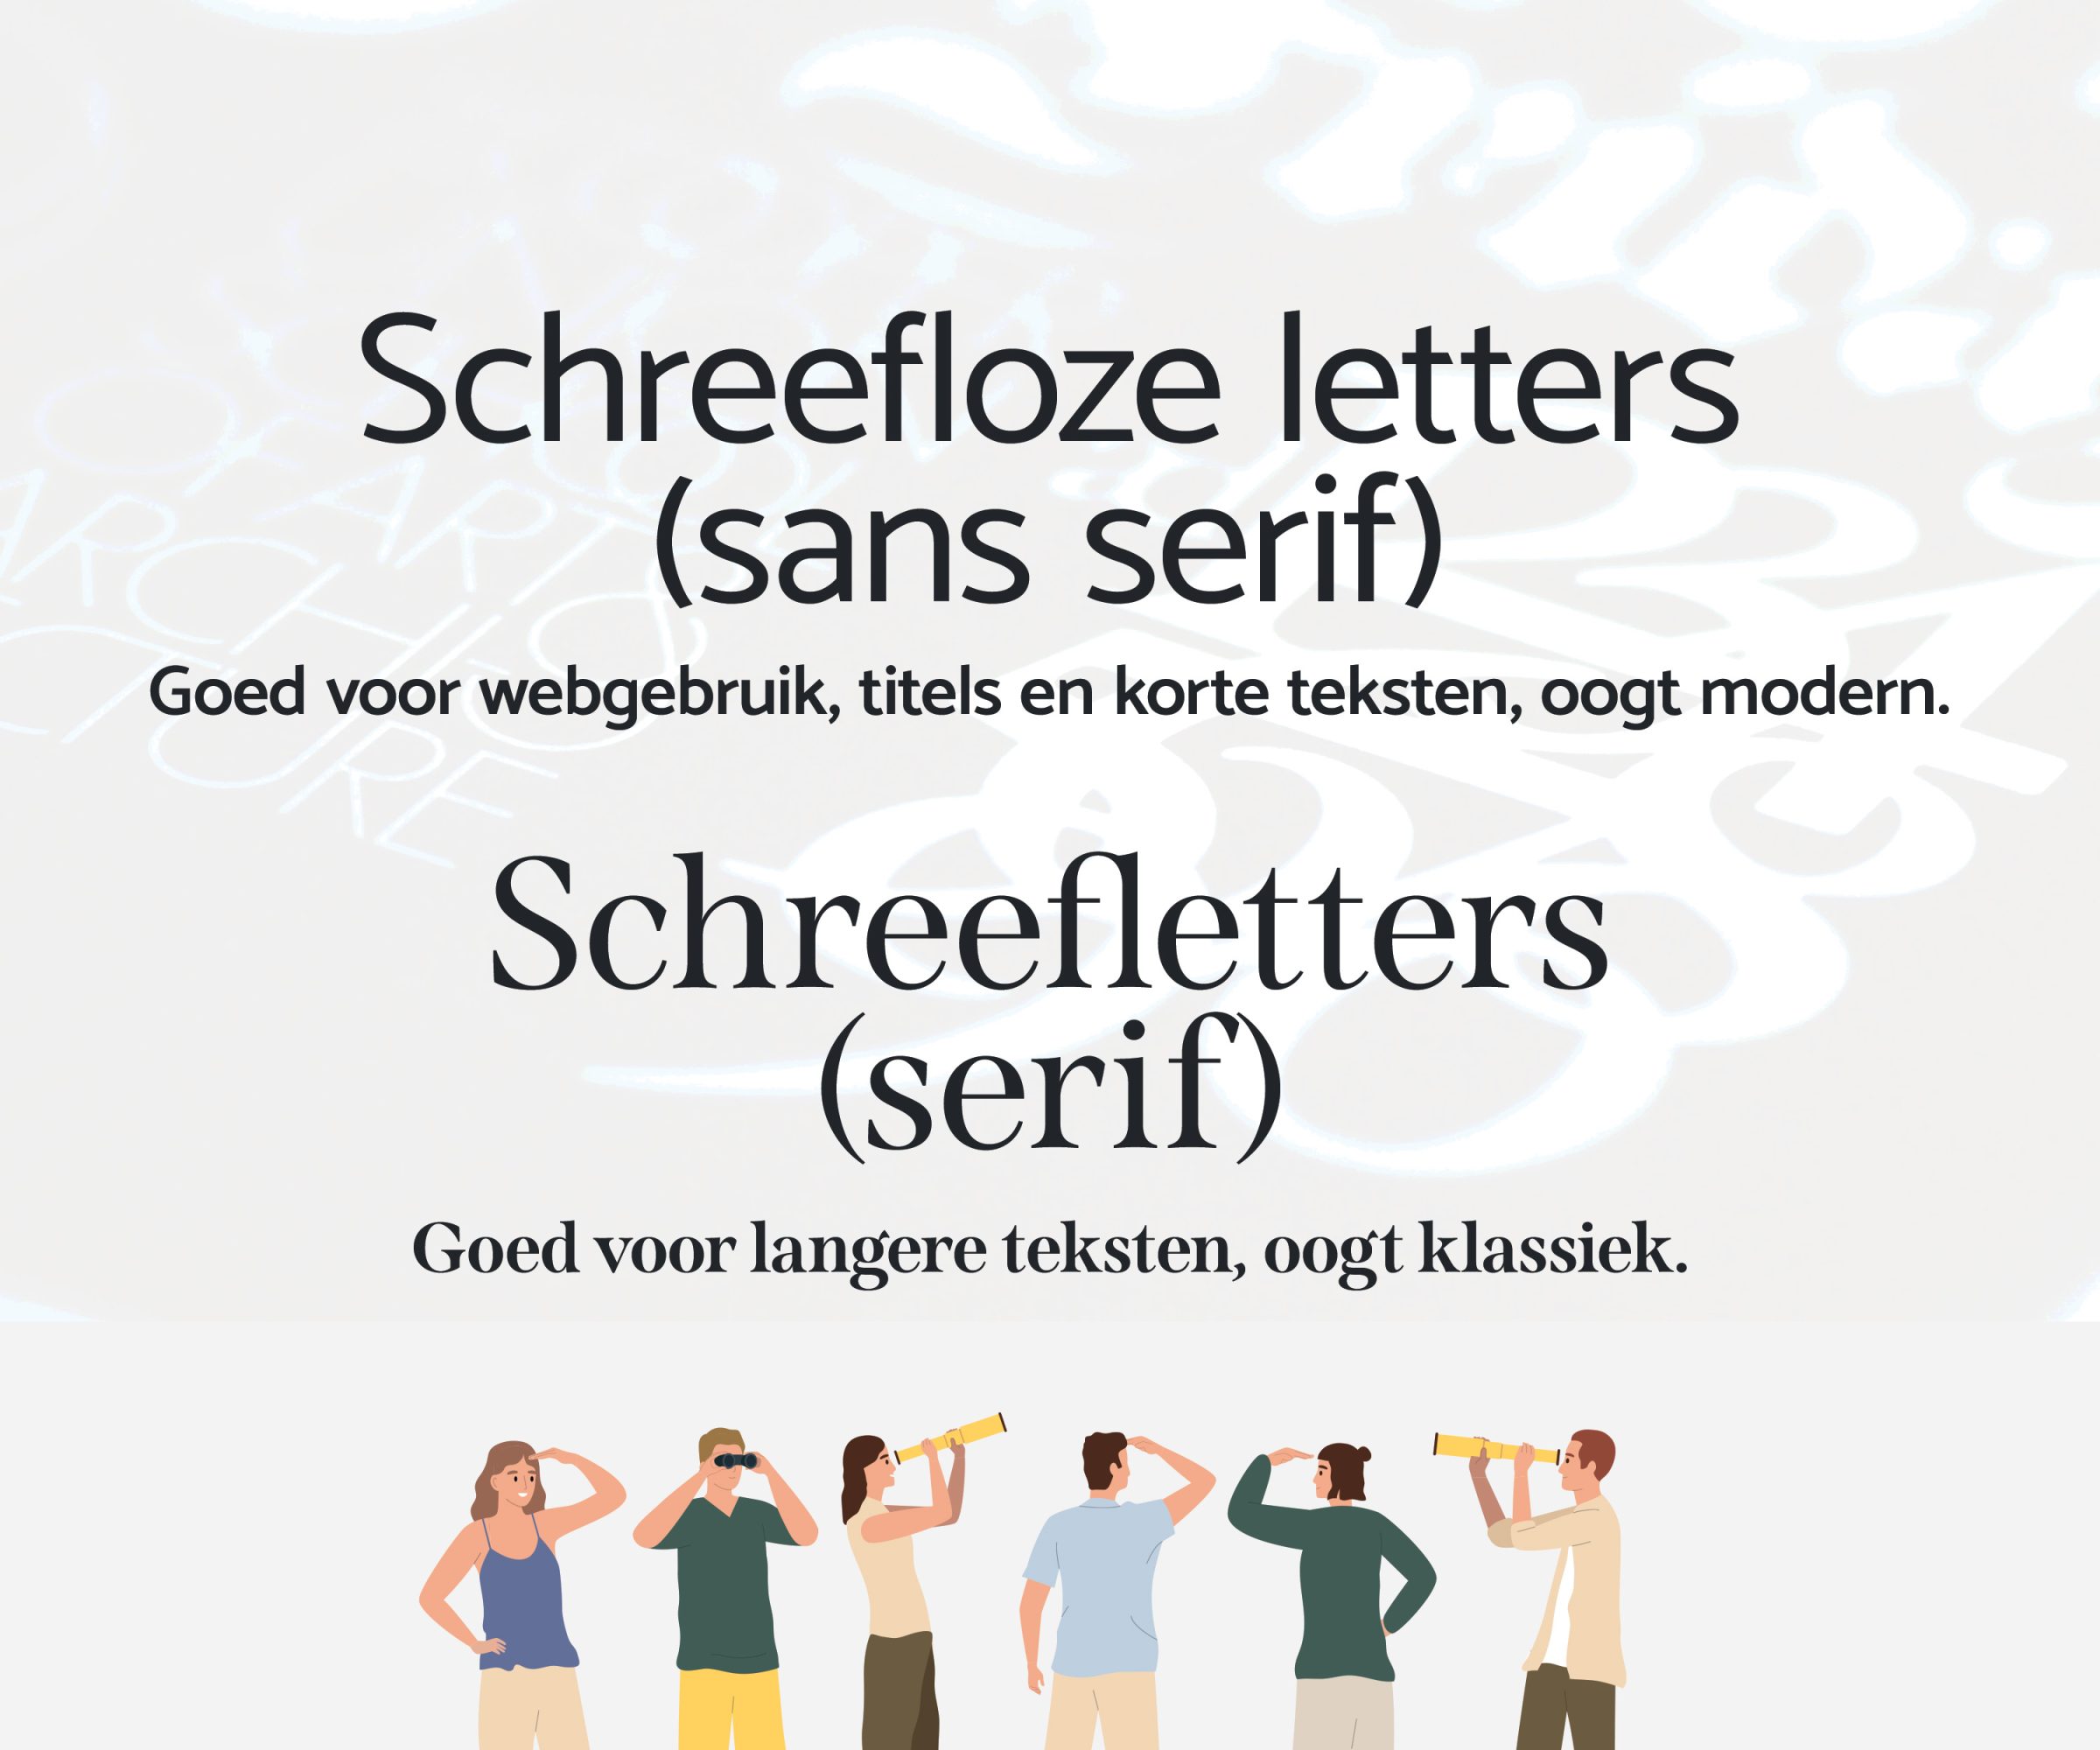 Schreefloze letters vs schreefletters - Het beste lettertype kiezen voor jouw website - Motionmill webdesign Antwerpen